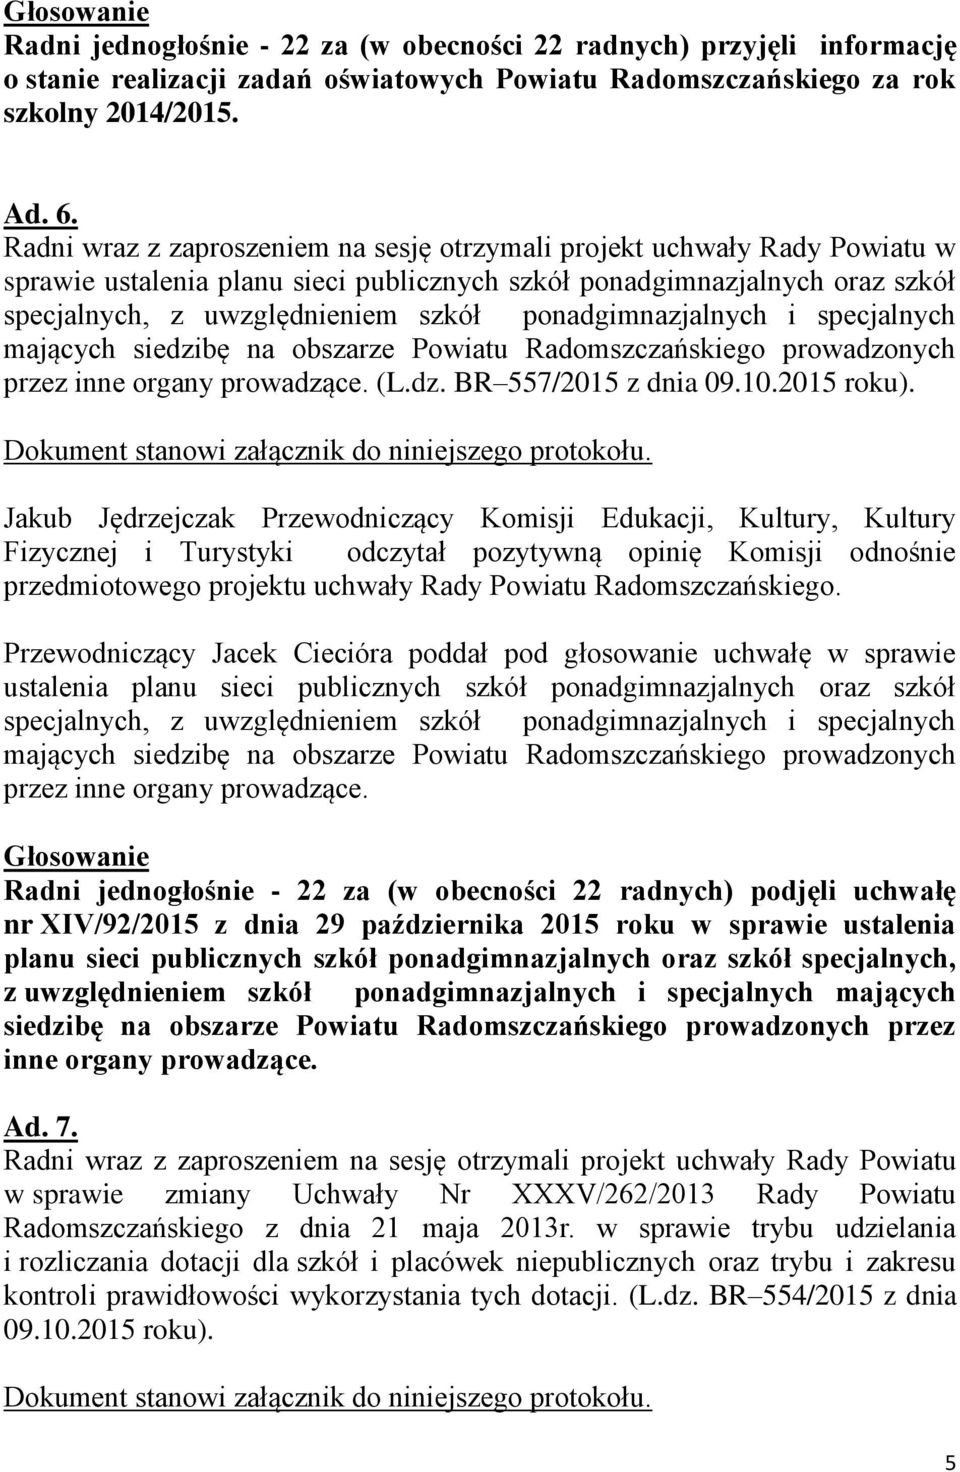 ponadgimnazjalnych i specjalnych mających siedzibę na obszarze Powiatu Radomszczańskiego prowadzonych przez inne organy prowadzące. (L.dz. BR 557/2015 z dnia 09.10.2015 roku).